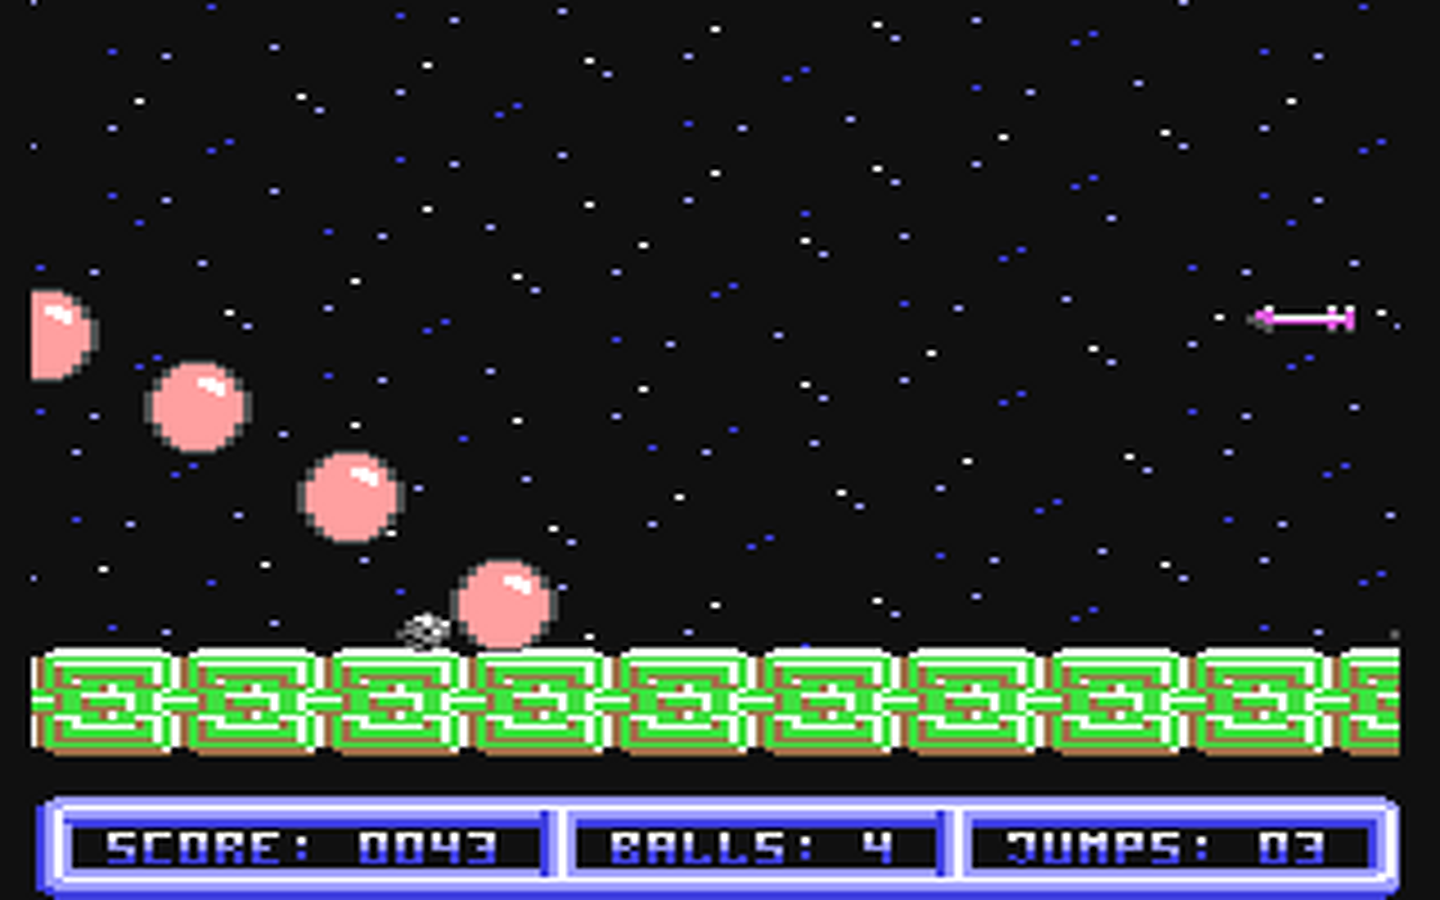 C64 GameBase Space-Ball Markt_&_Technik 1989